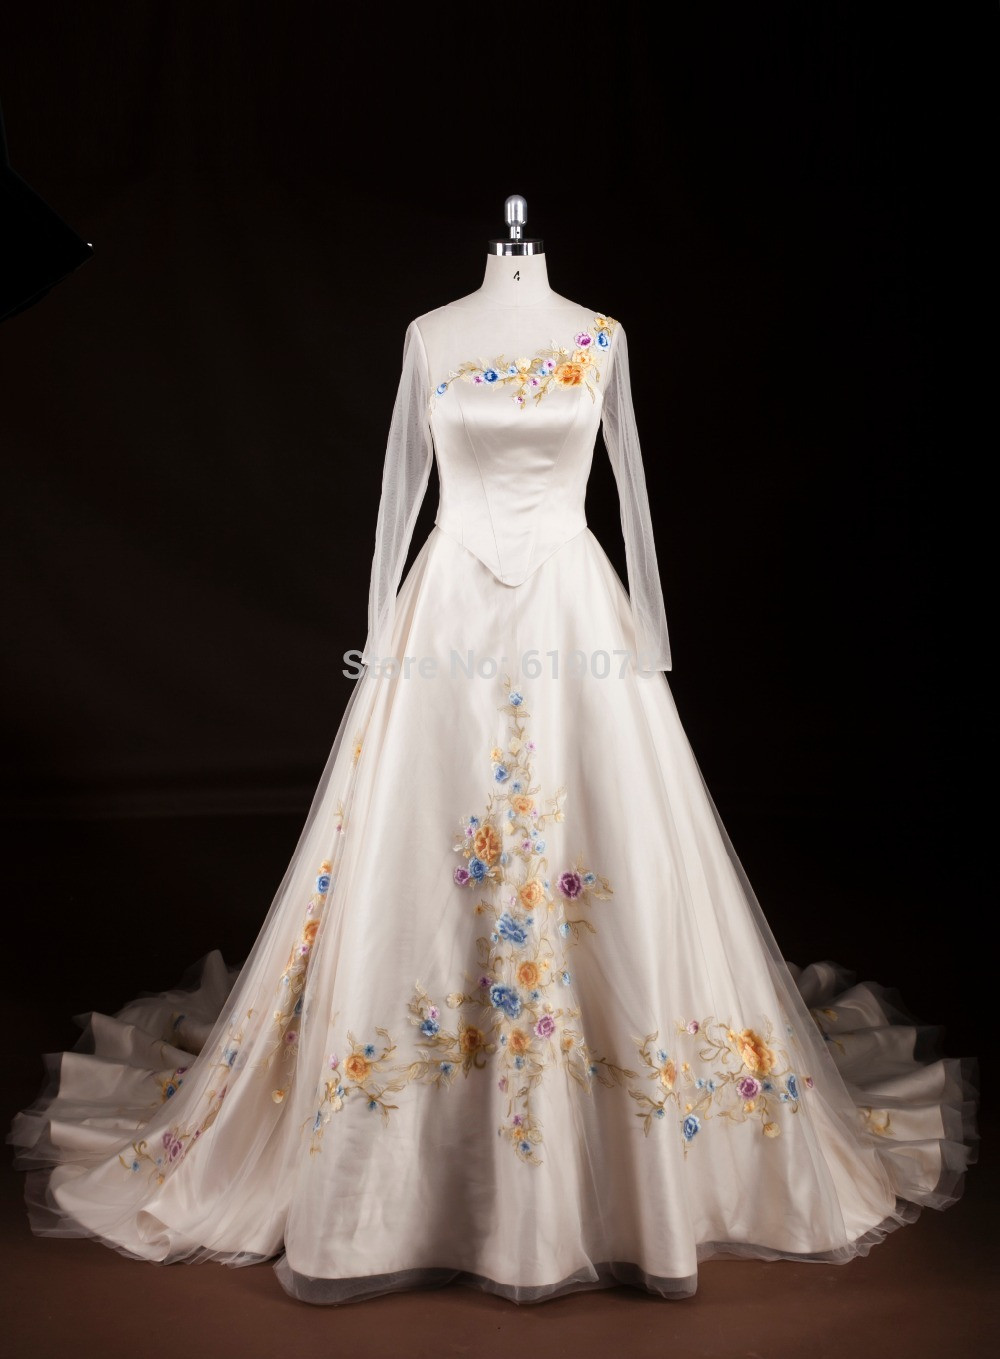 Cinderella Hochzeitskleid
 High end Cinderella wedding dress fairy tale dream Bridal